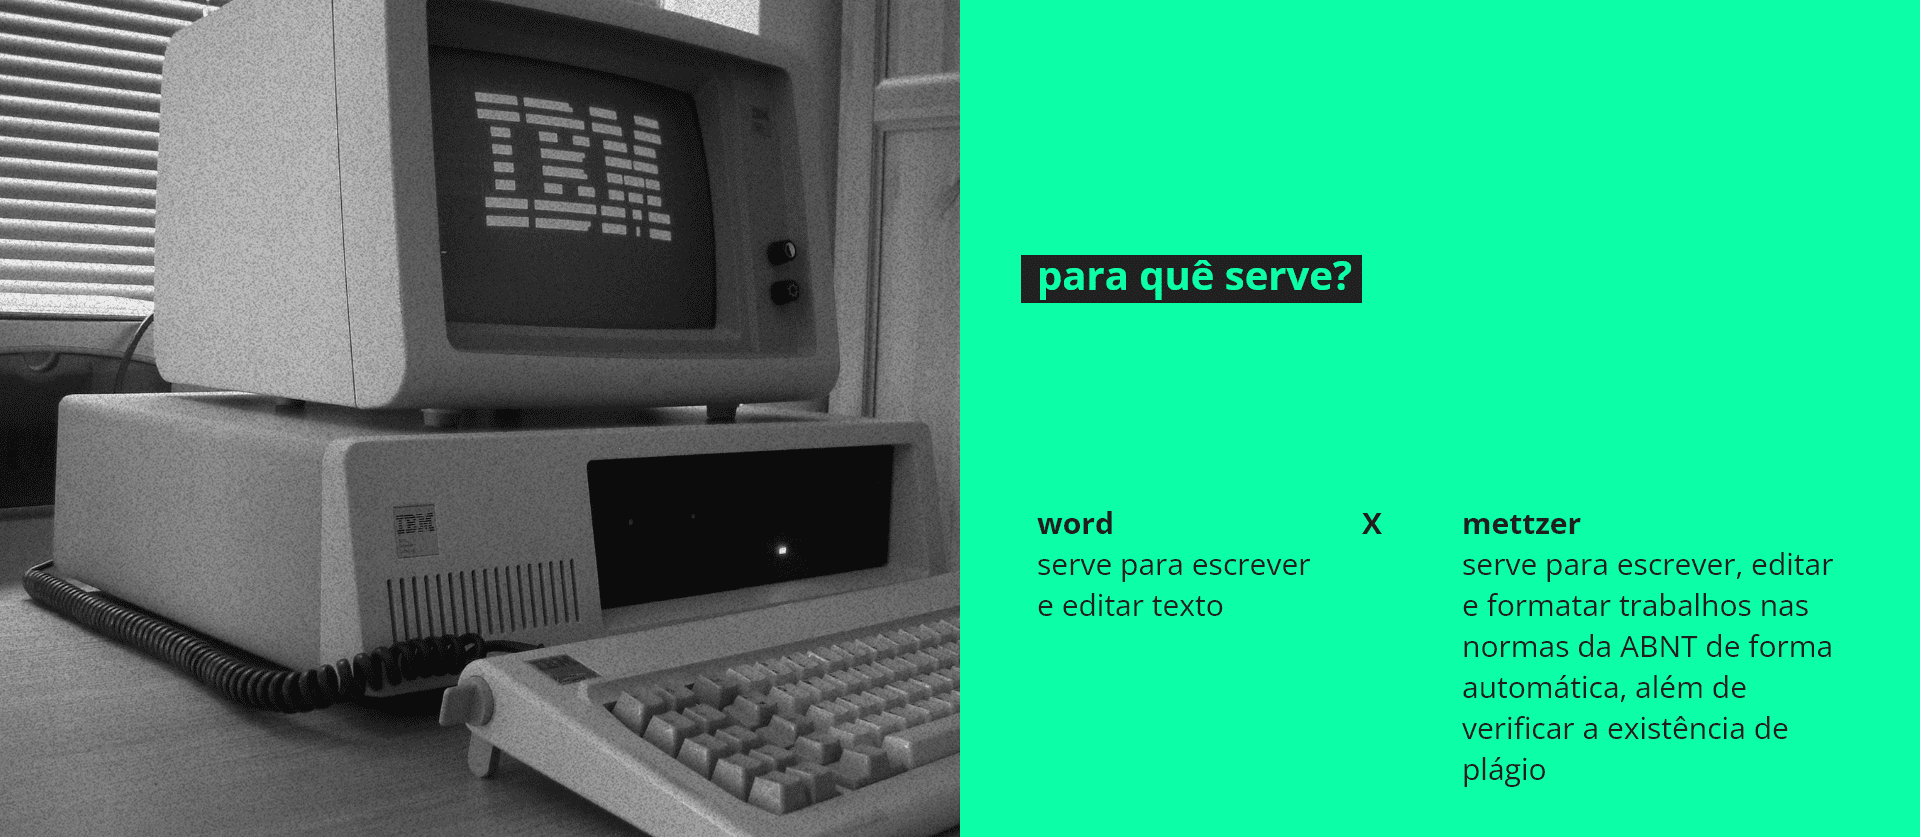 word vs mettzer - para quê serve